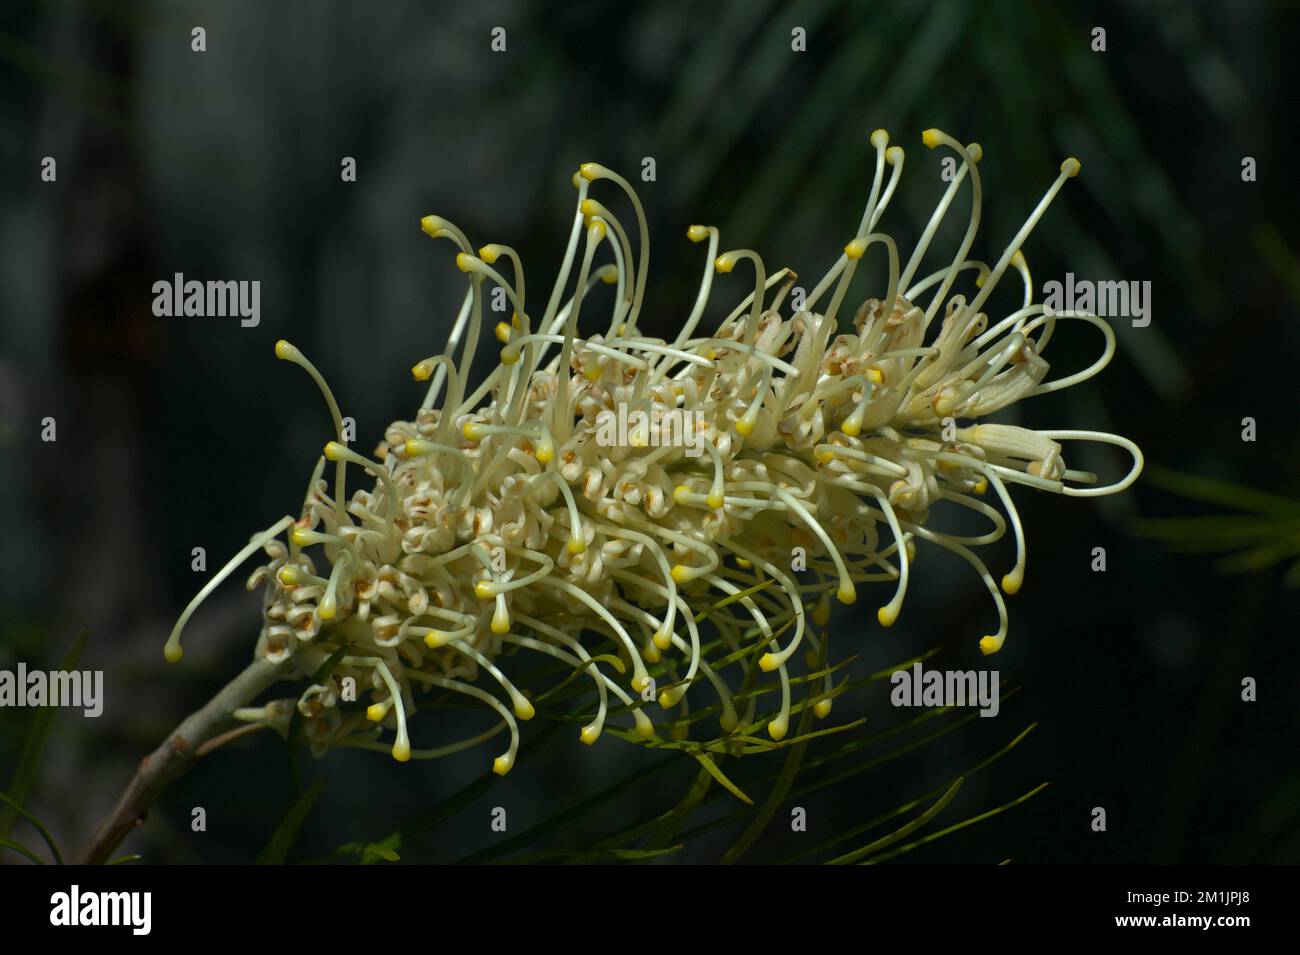 Diese glorreiche goldene Grevillea (Grevillea banksii) ist versteckt hinter den Gewächshäusern im Melbourne Zoo, wo Besucher sie selten sehen. Schande! Stockfoto